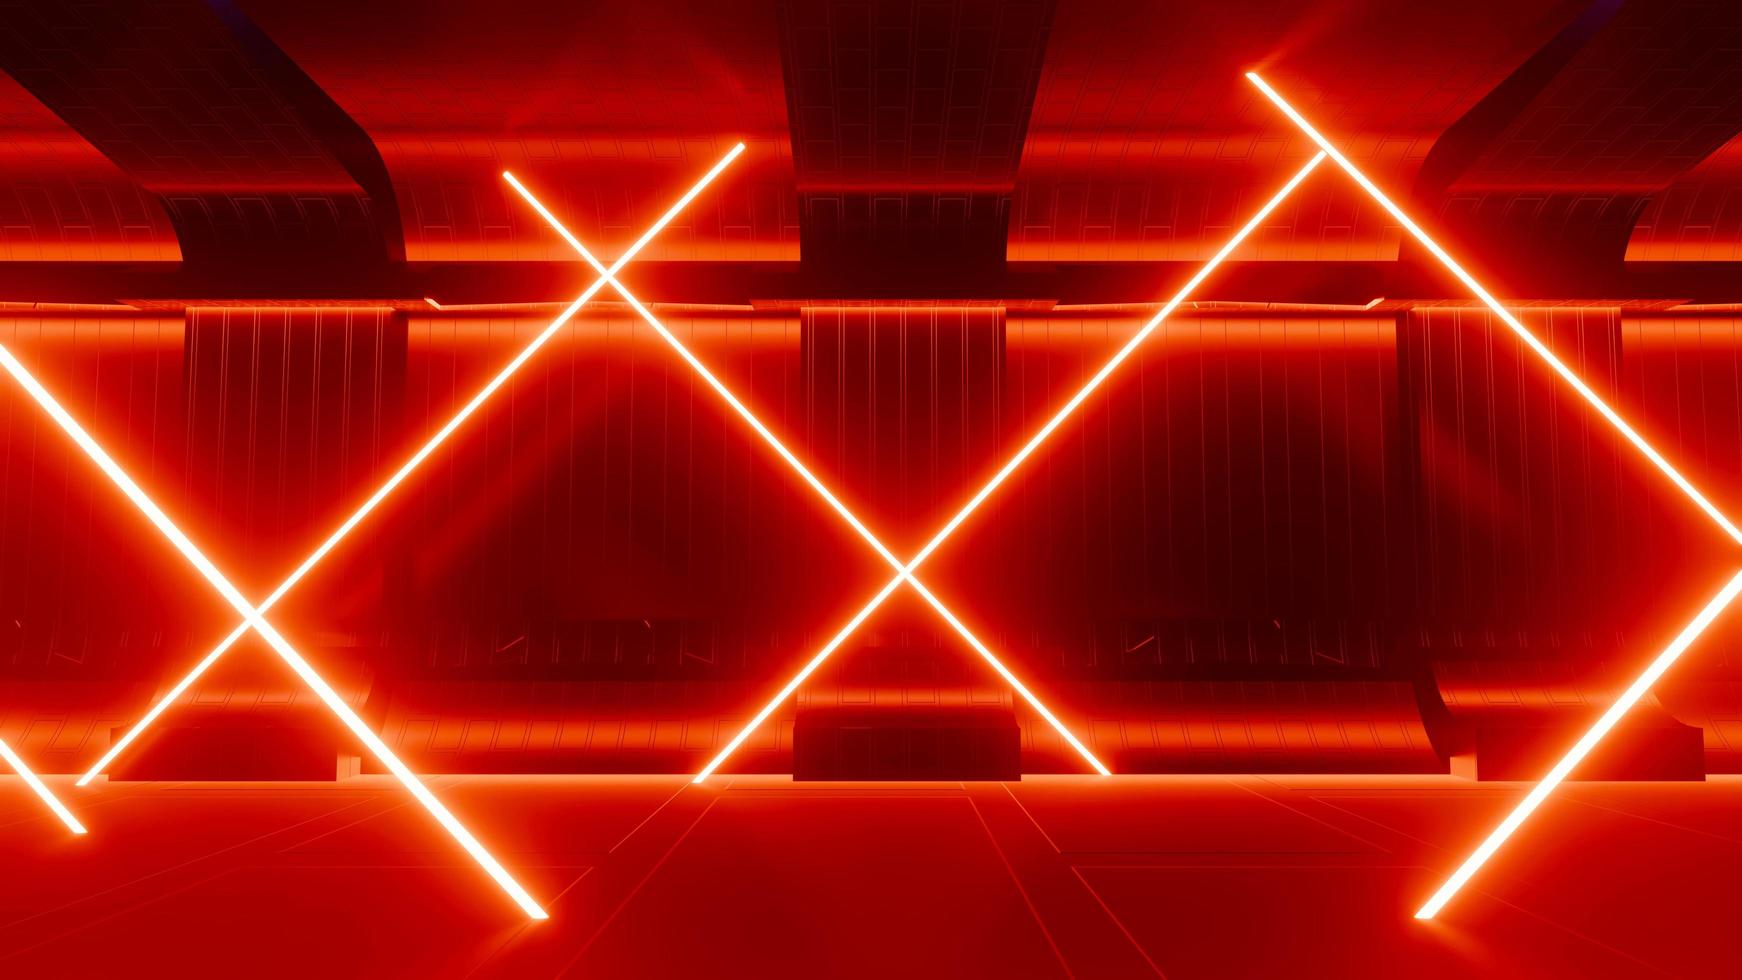 3D-Darstellung von Flash-Neon und Licht, die auf einer dunklen Szene leuchten. Geschwindigkeitslicht bewegte Linien. foto